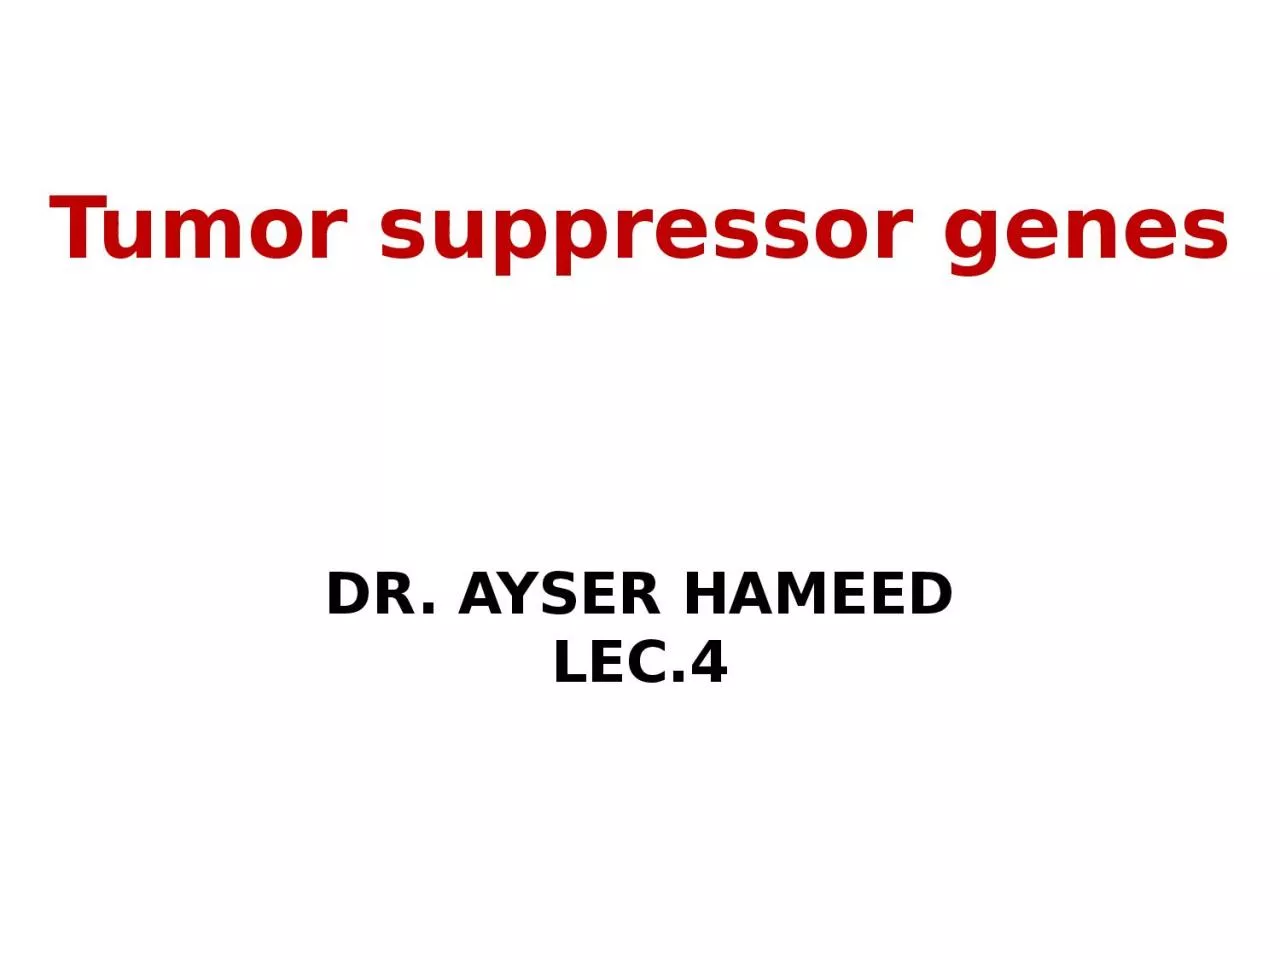 Tumor suppressor genes DR. AYSER HAMEED